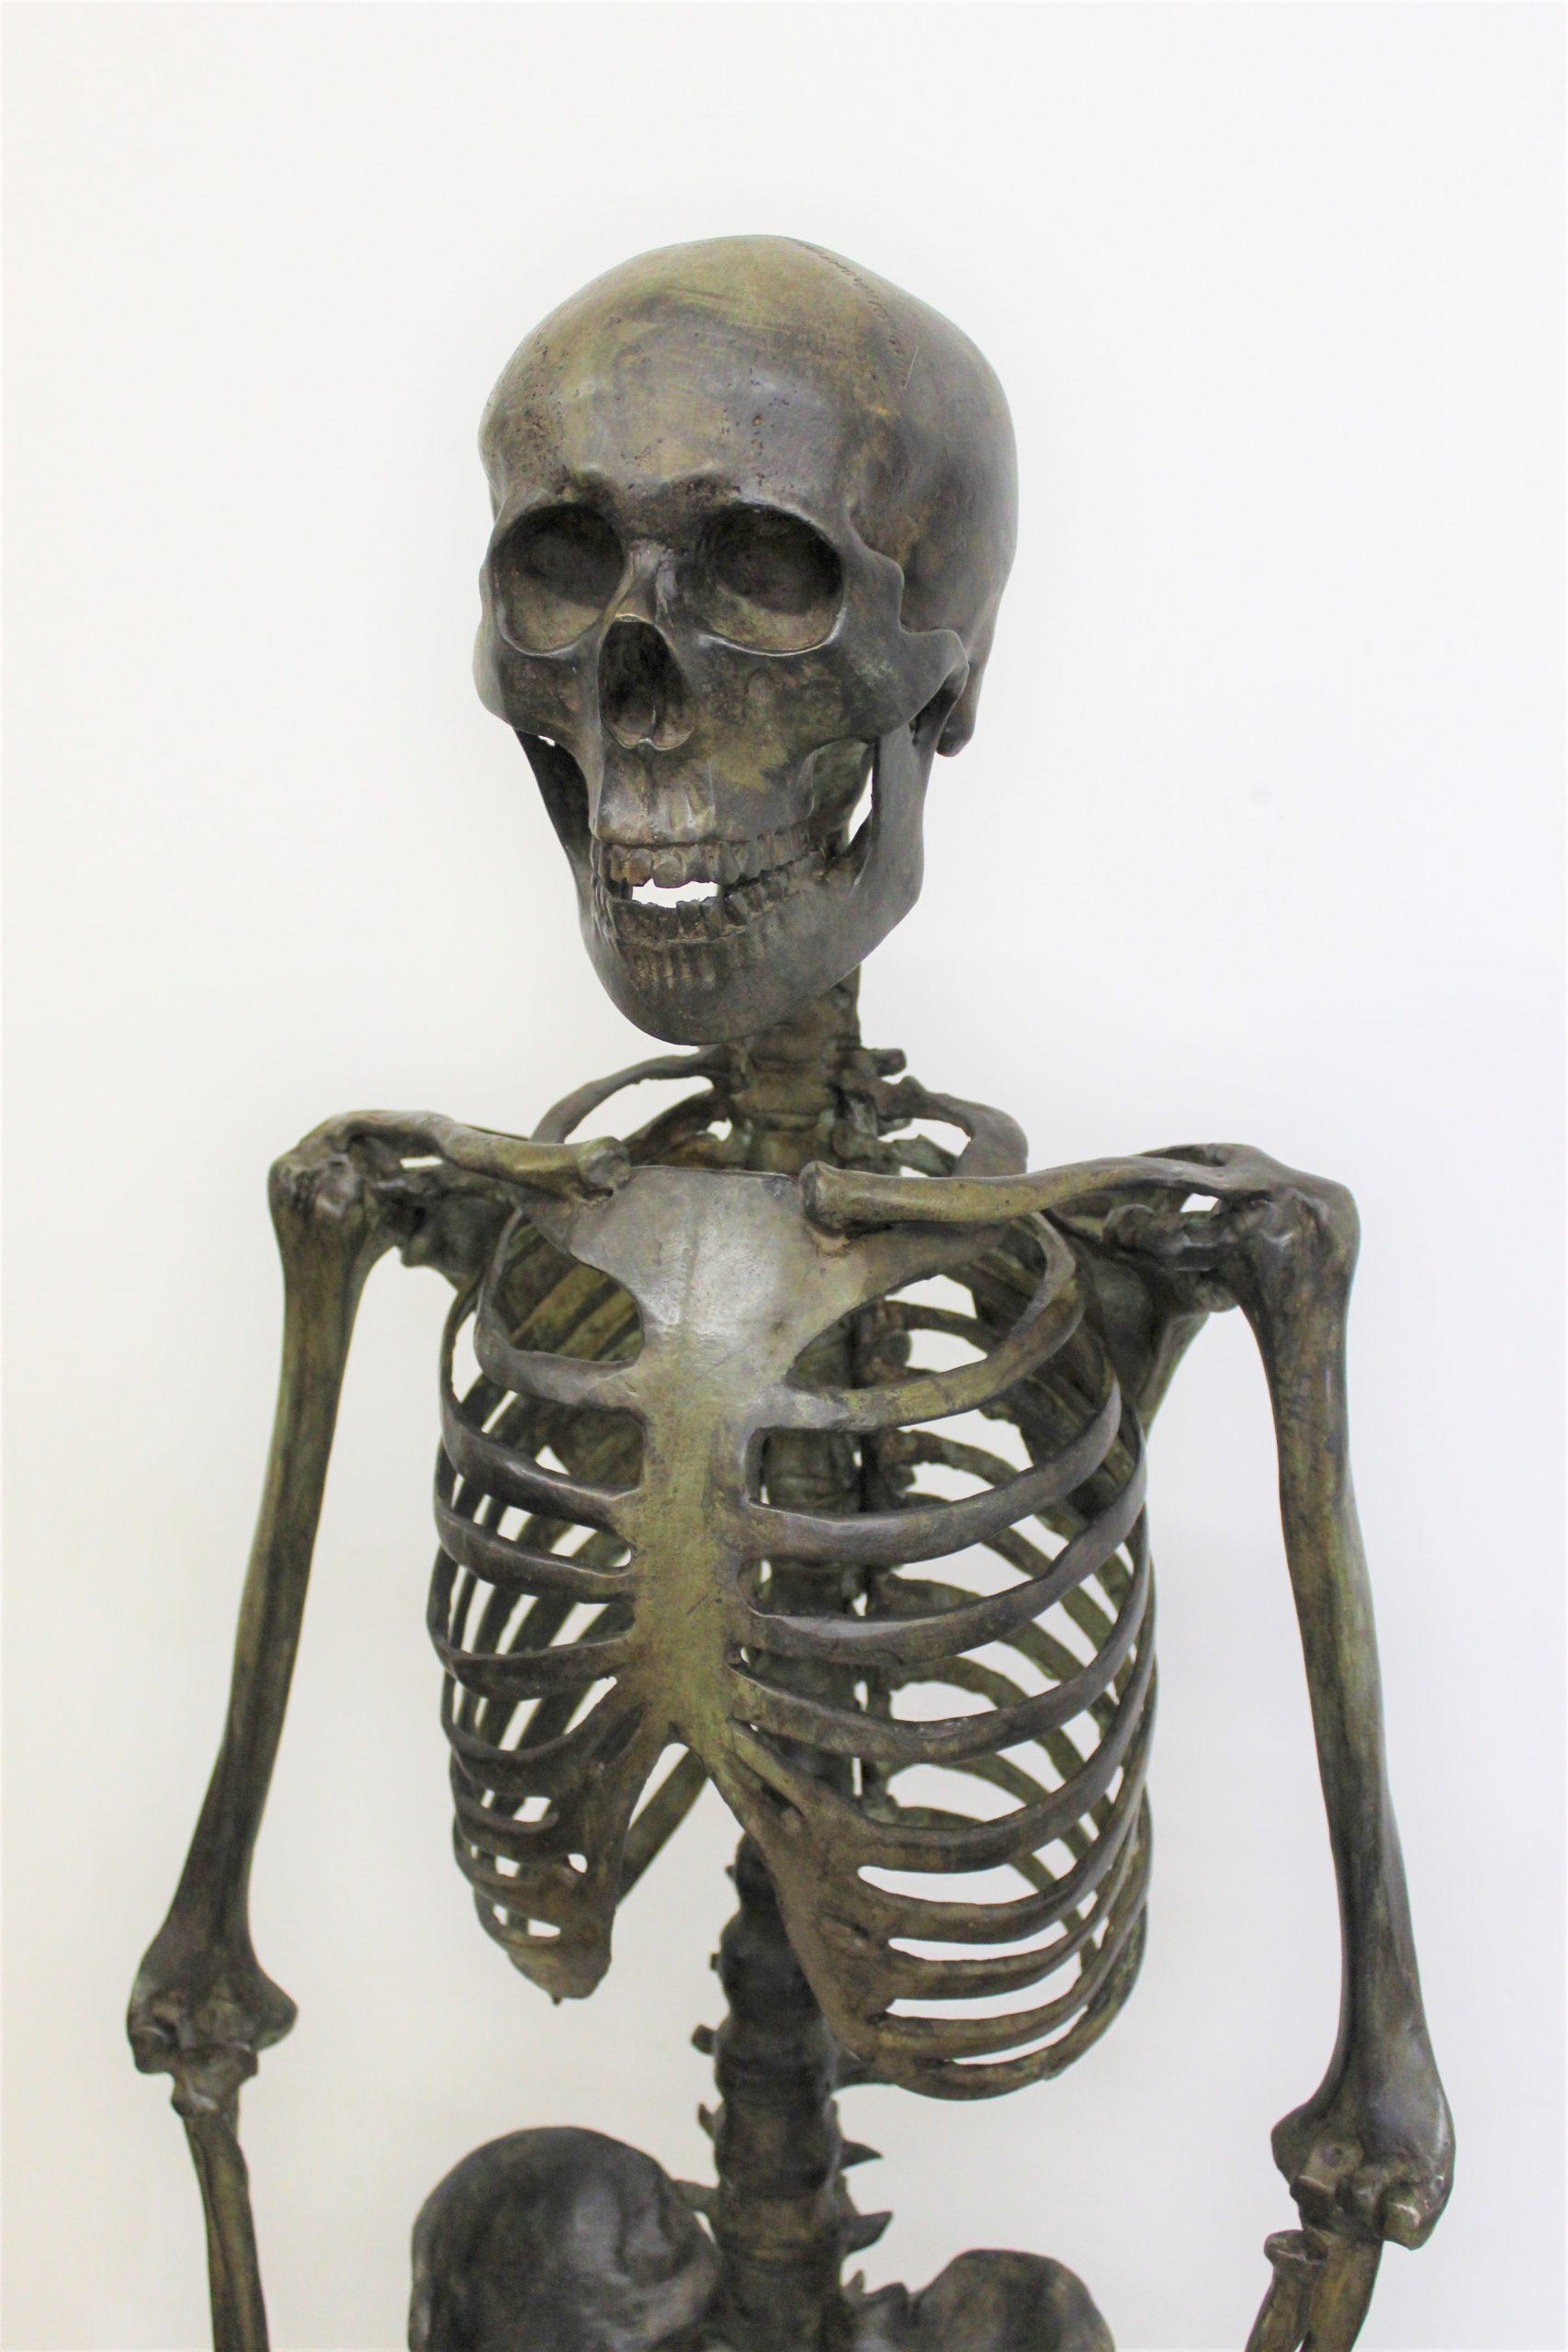 Squelette en bronze patiné, patine vert foncé, très bien fini dans les détails et détails. copie exacte du corps humain.